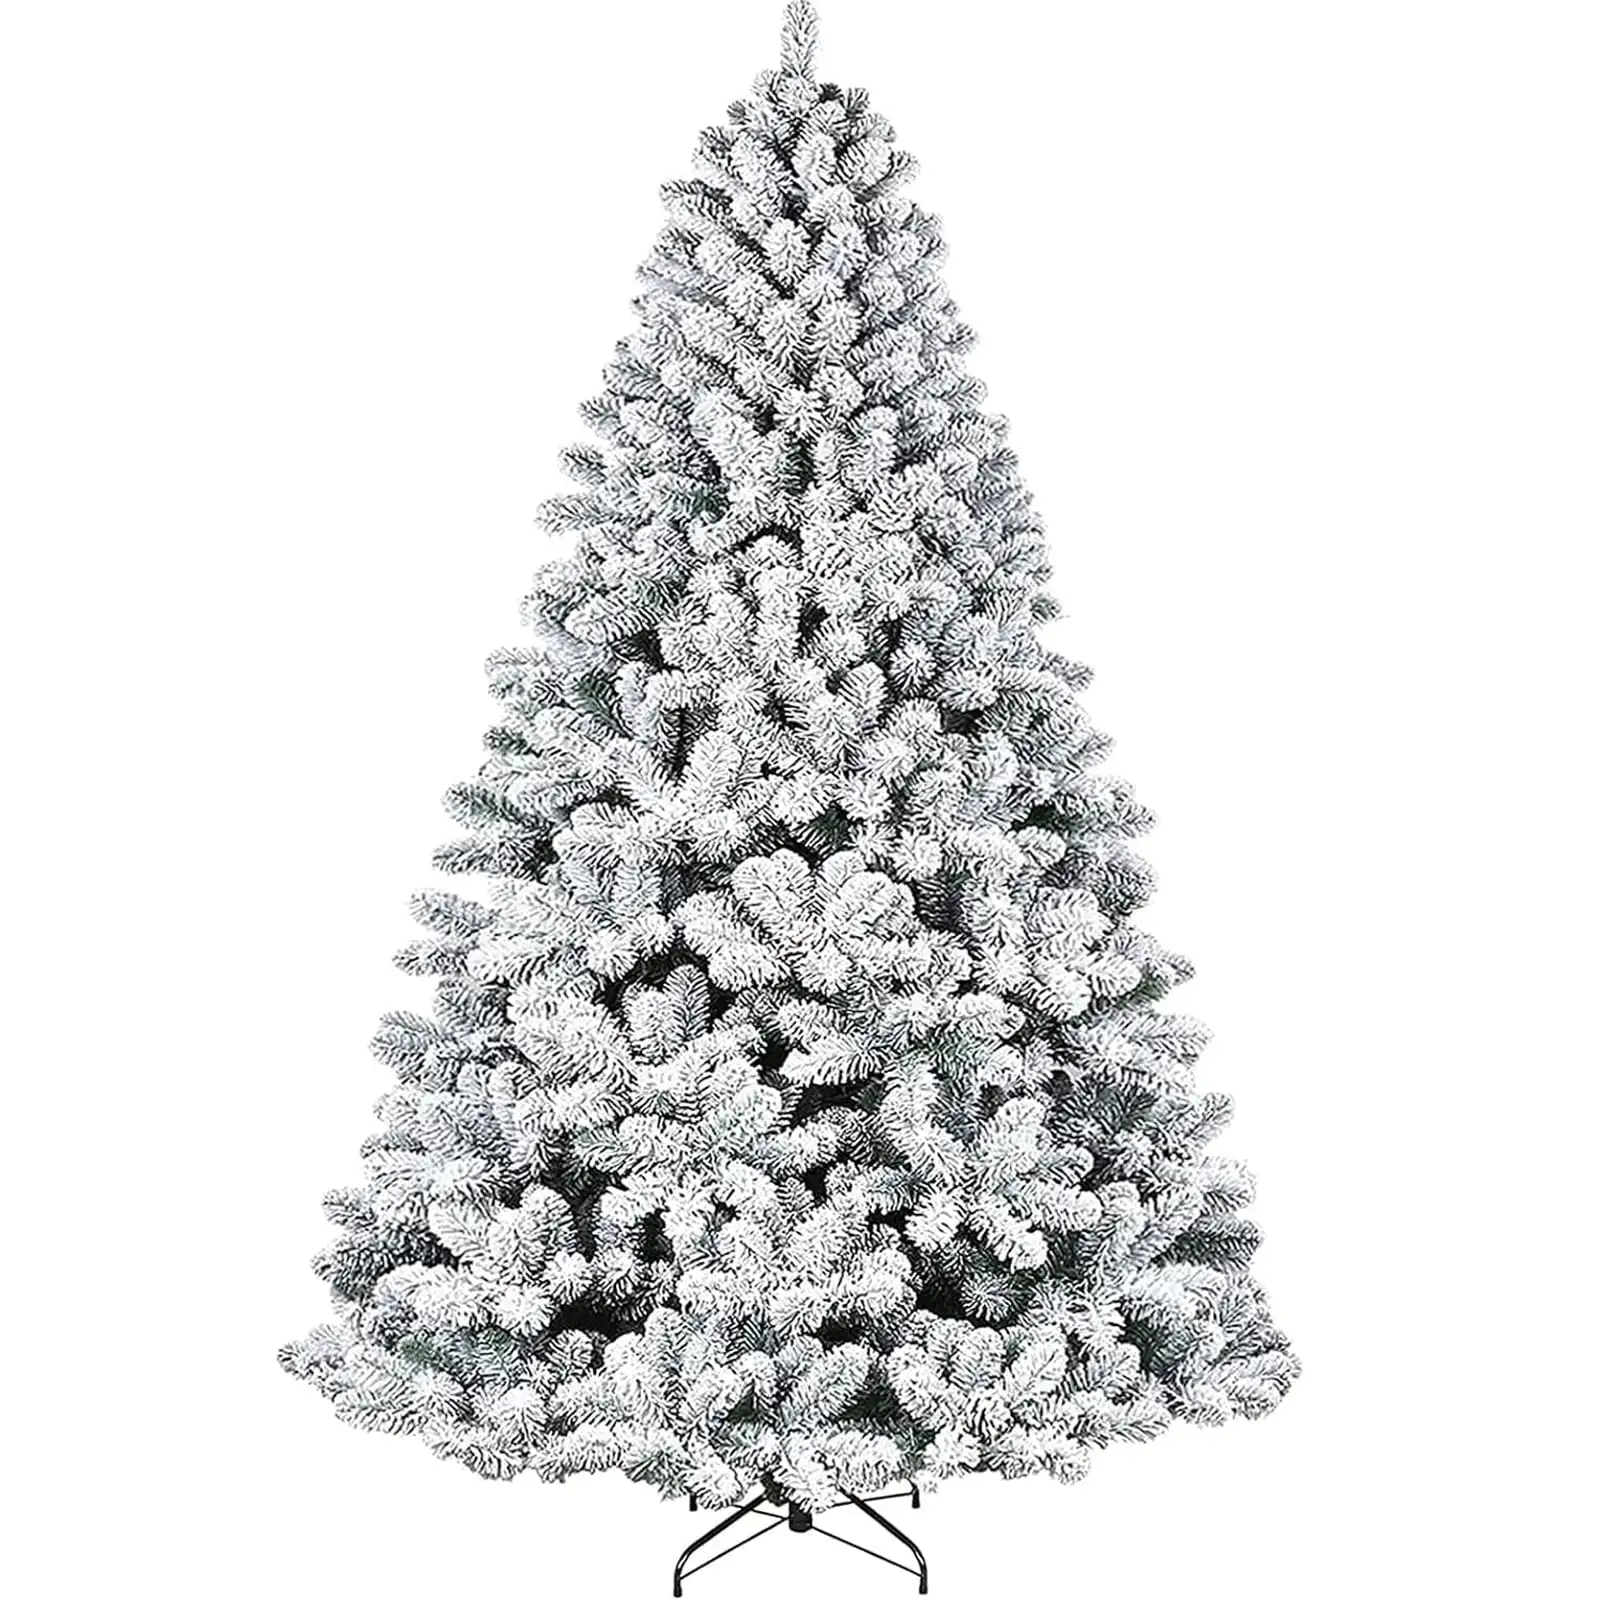 

Рождественская елка 6 футов, Снежная Флокированная сосна, искусственная Рождественская елка с 1000 наконечниками, складная металлическая подставка, бесплатная доставка, праздничное украшение